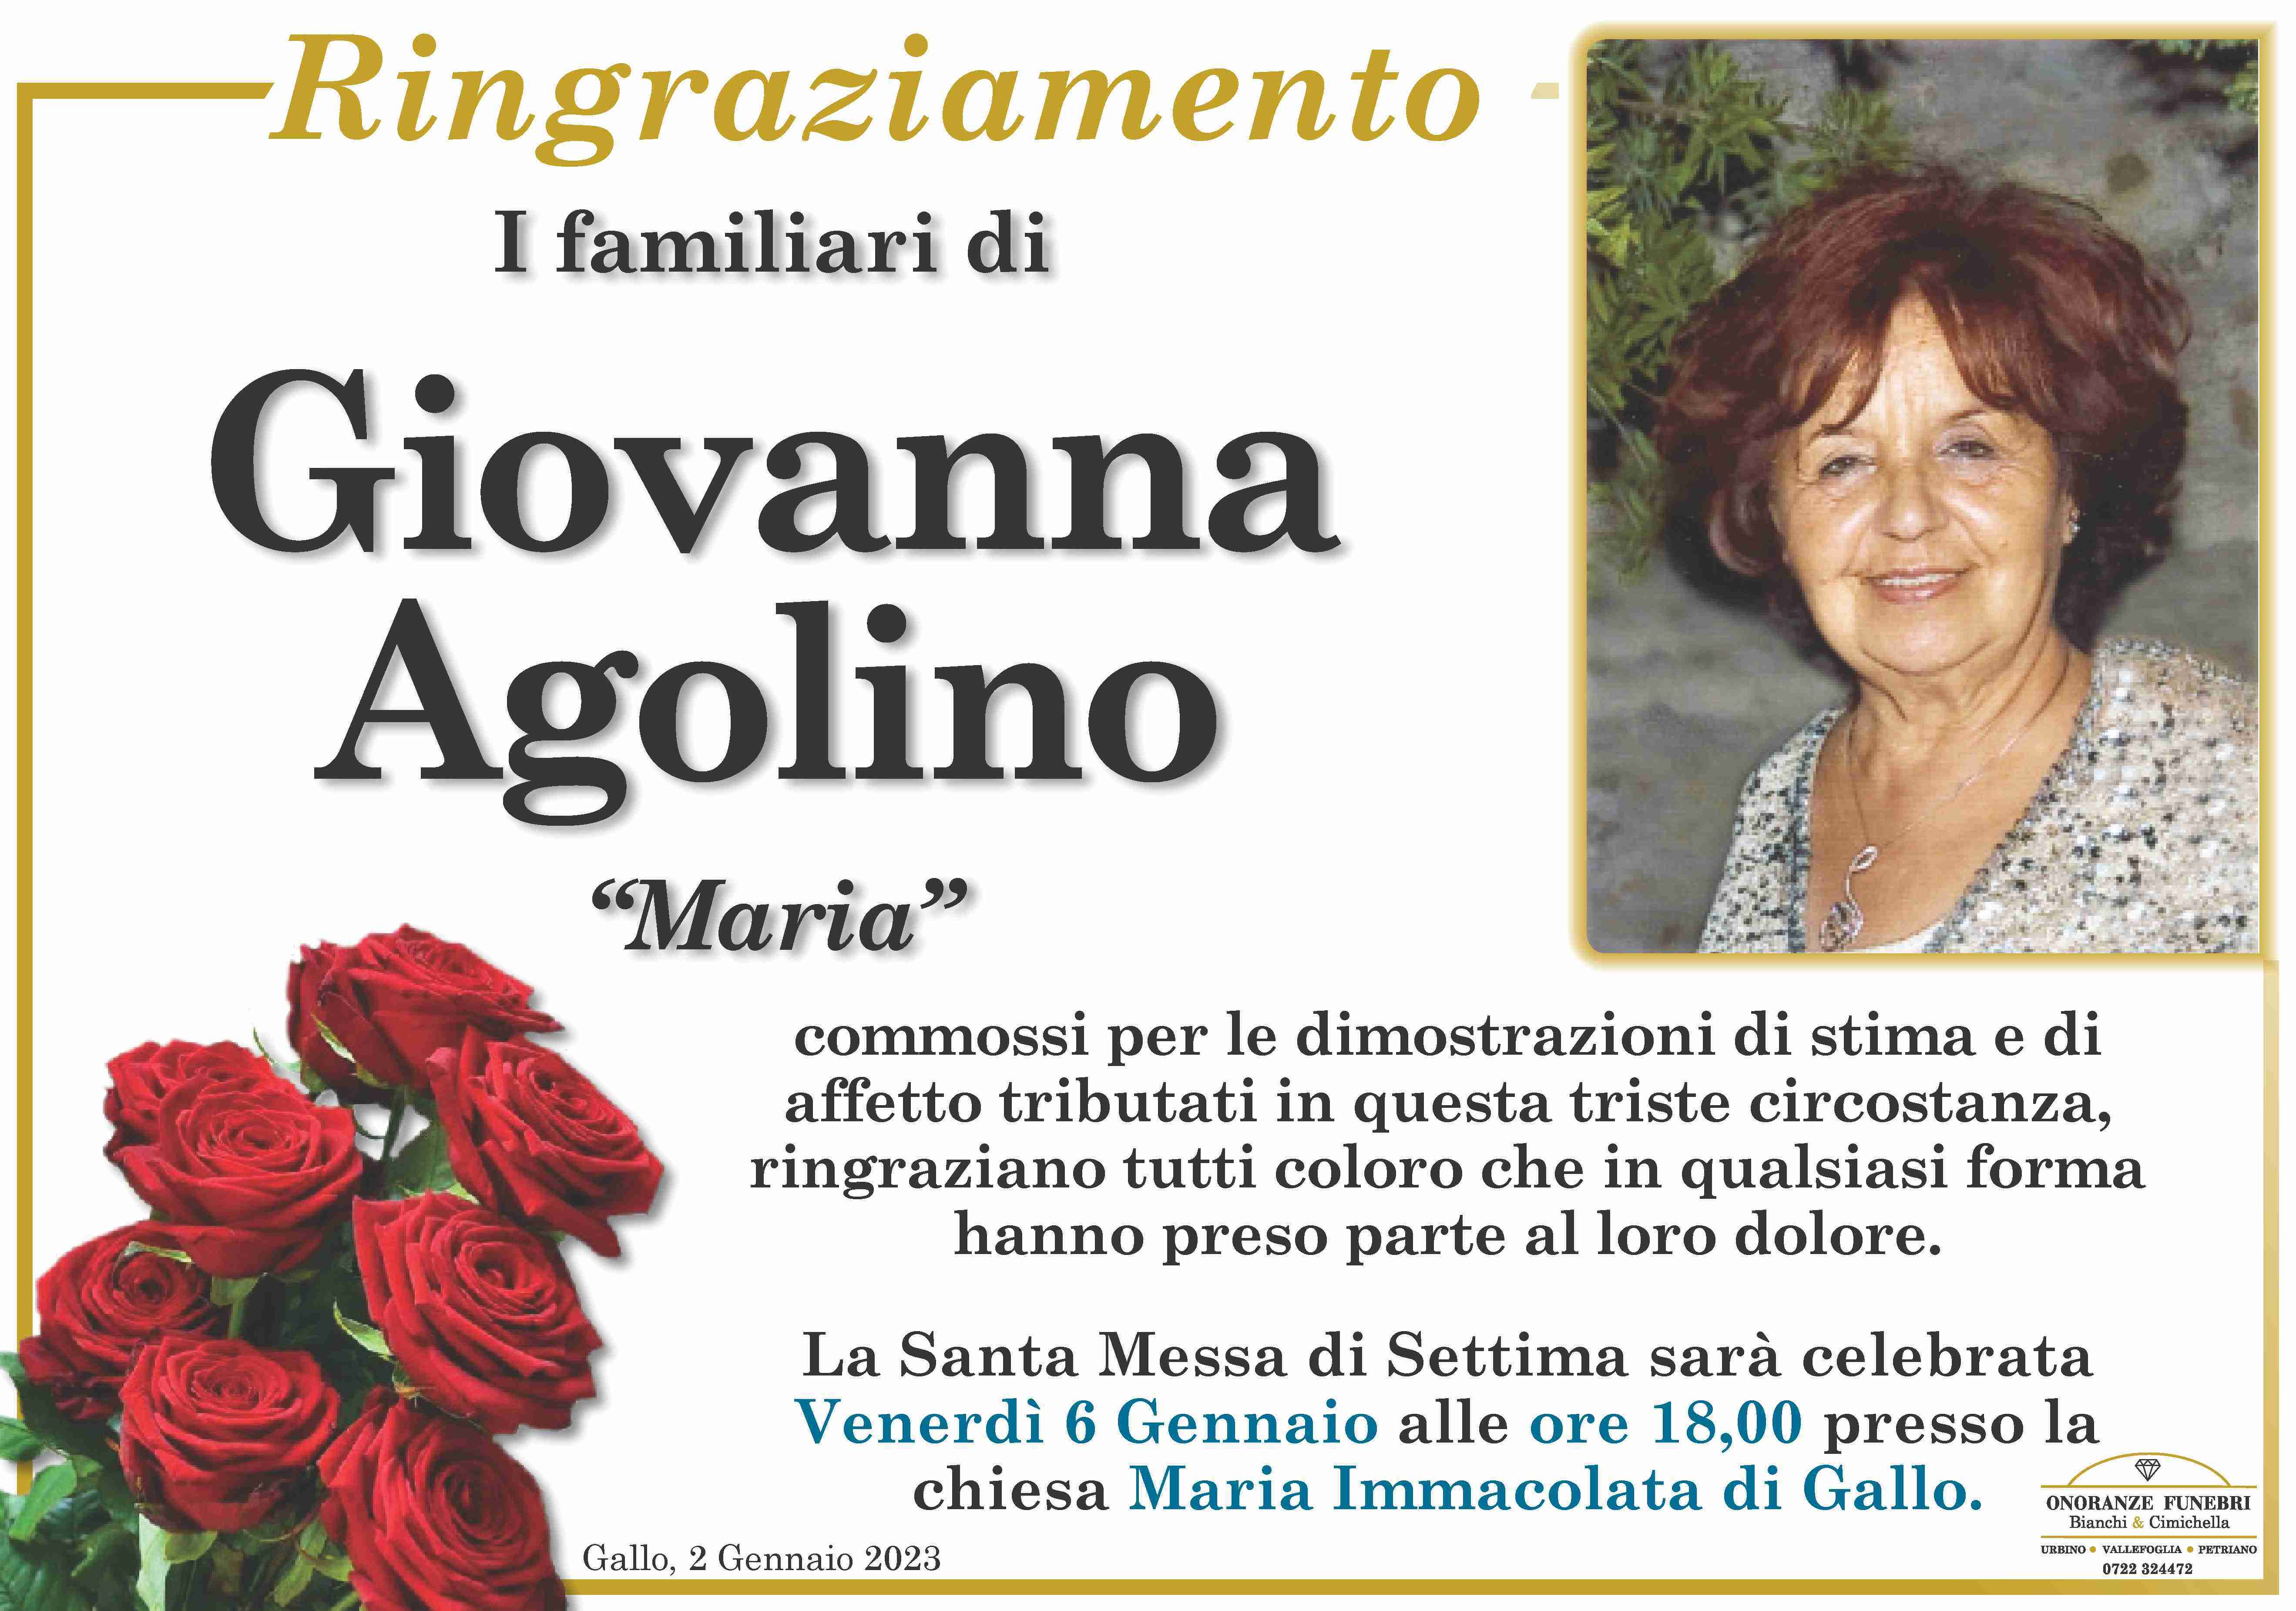 Giovanna Agolino